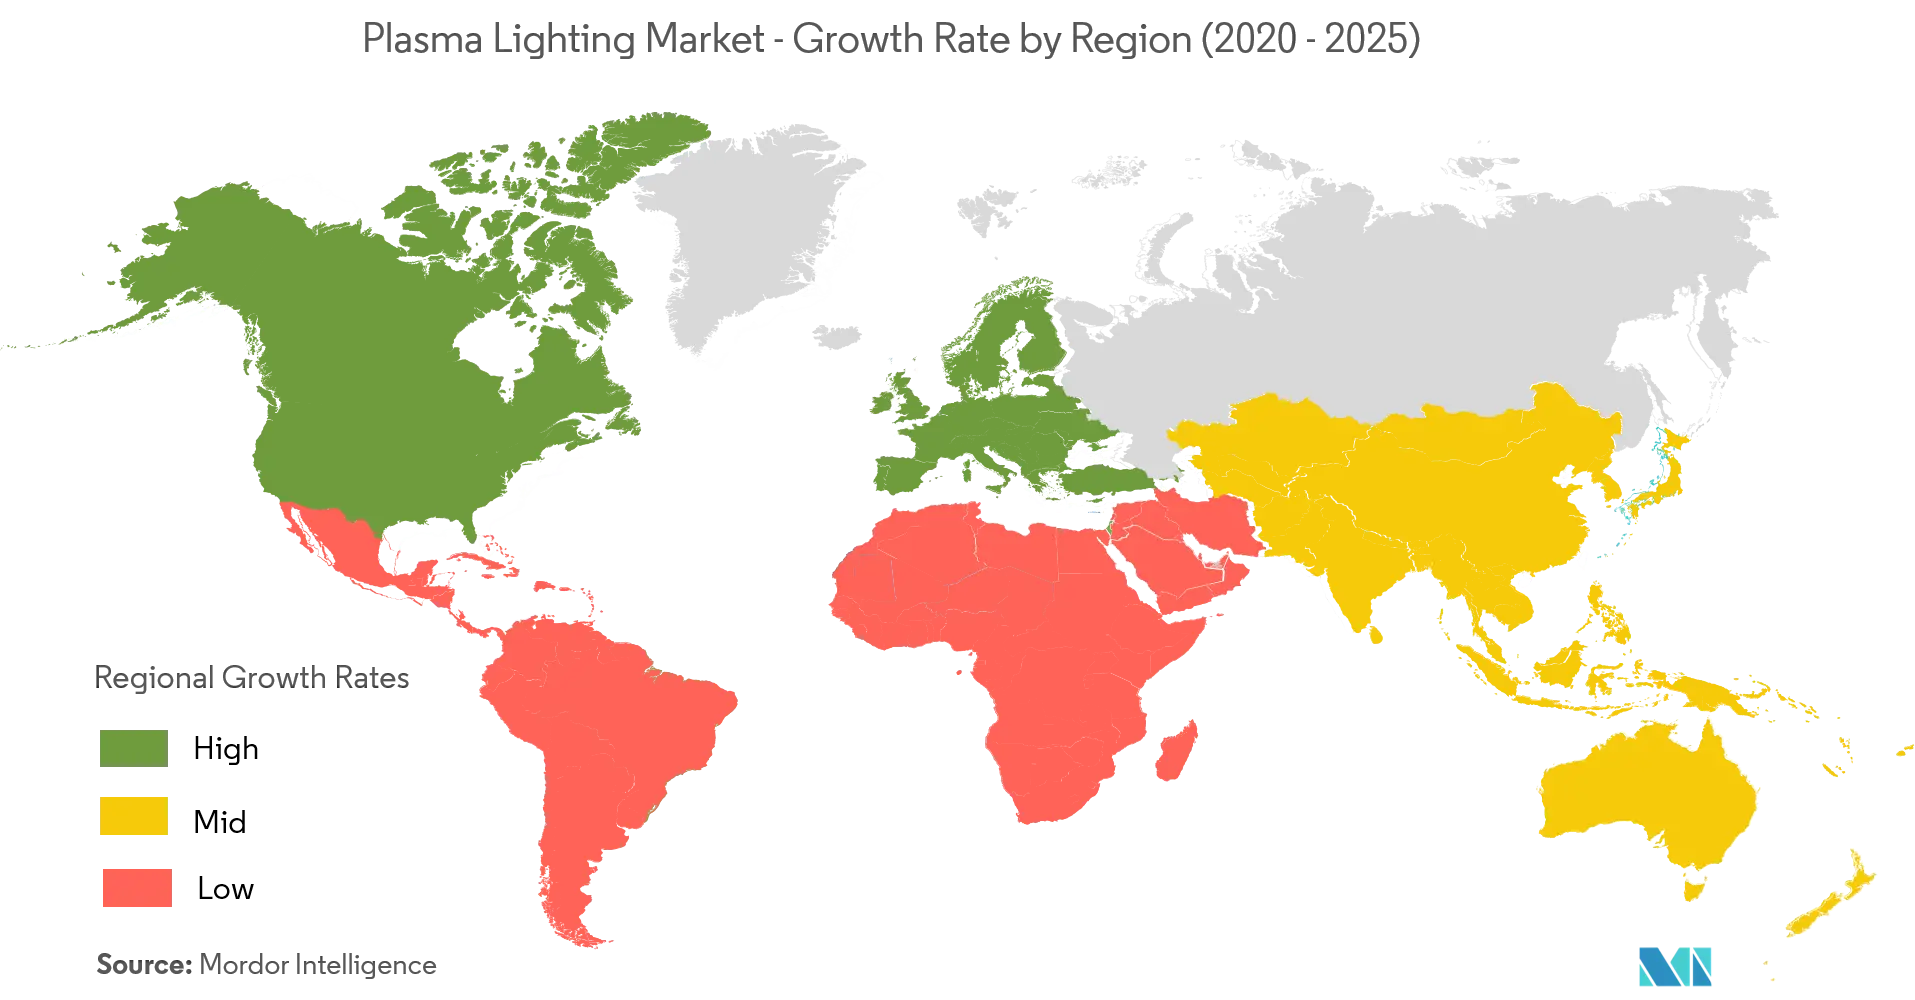 Thị trường chiếu sáng plasma - Tốc độ tăng trưởng theo khu vực (2020-2025)